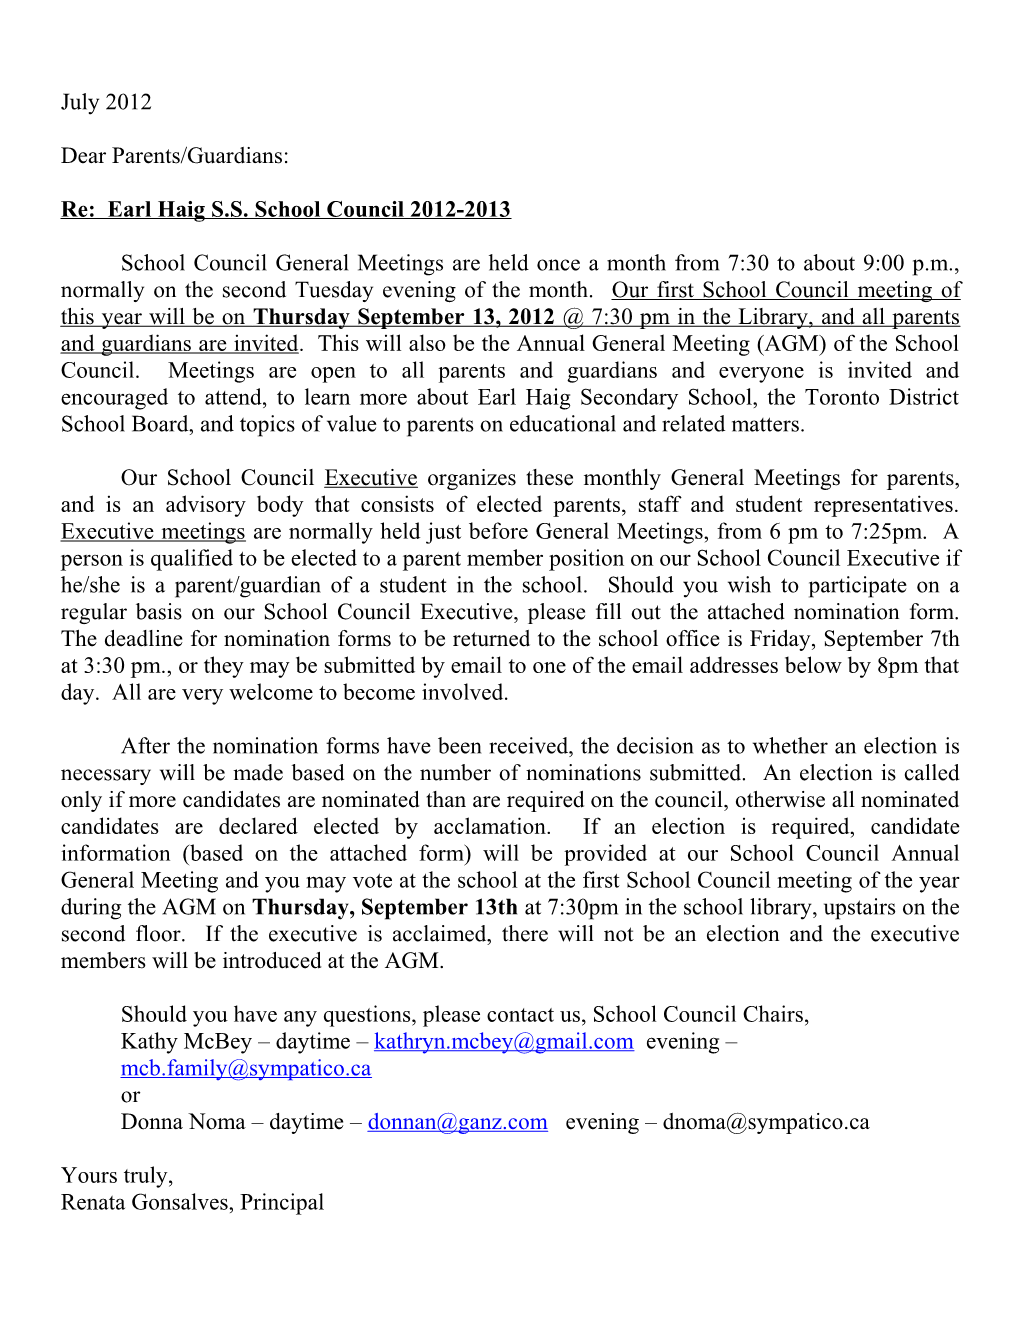 Re: Earl Haig S.S. School Council 2012-2013